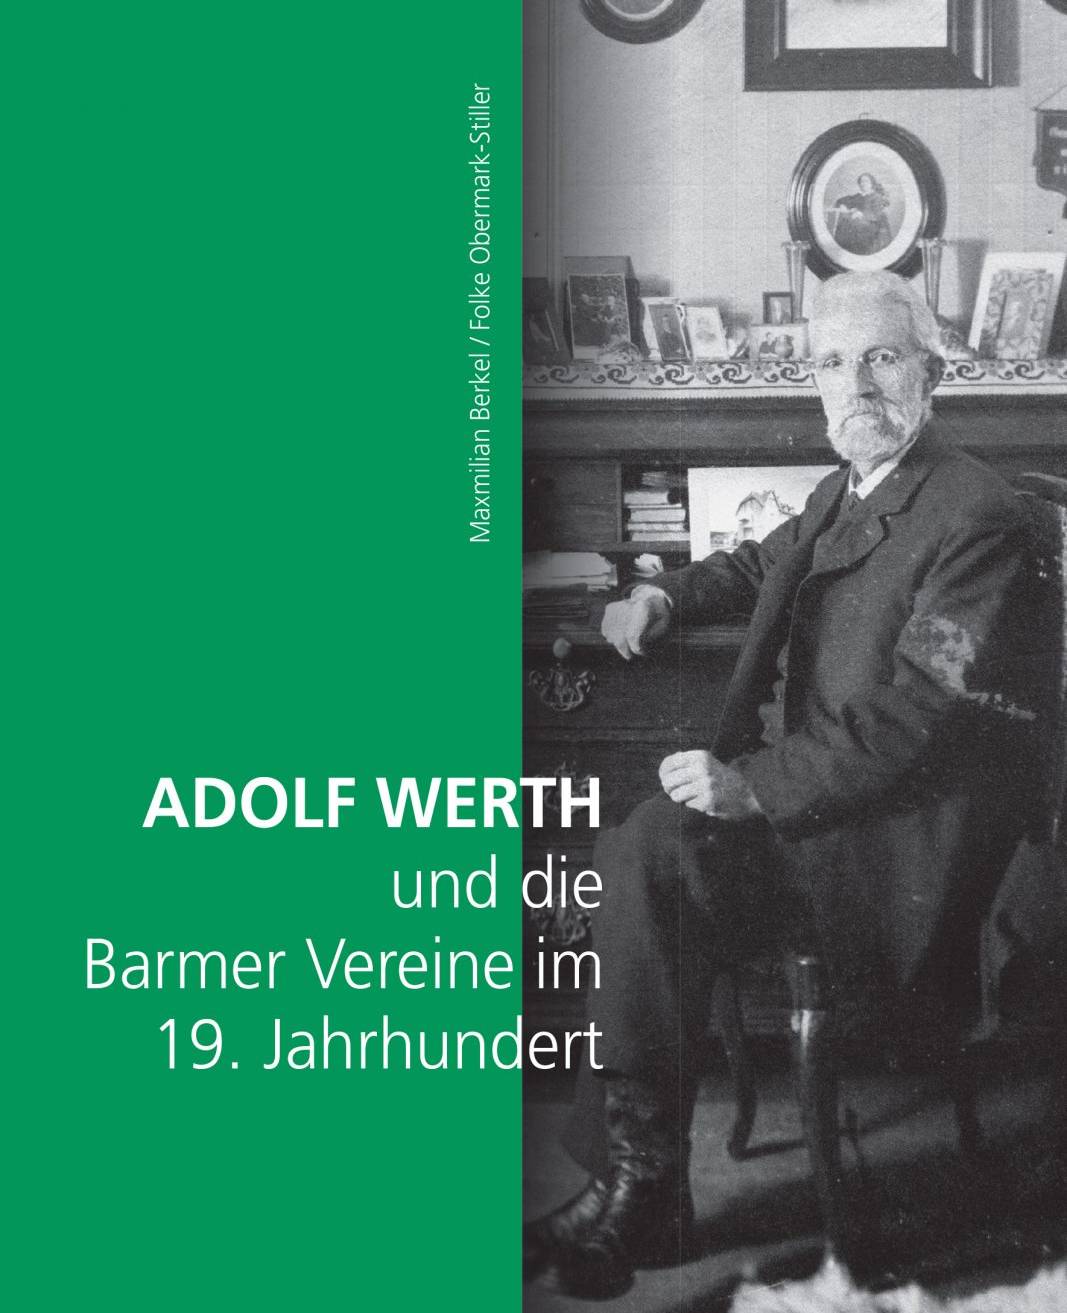 Adolf Werth und die Barmer Vereine im 19. Jahrhundert